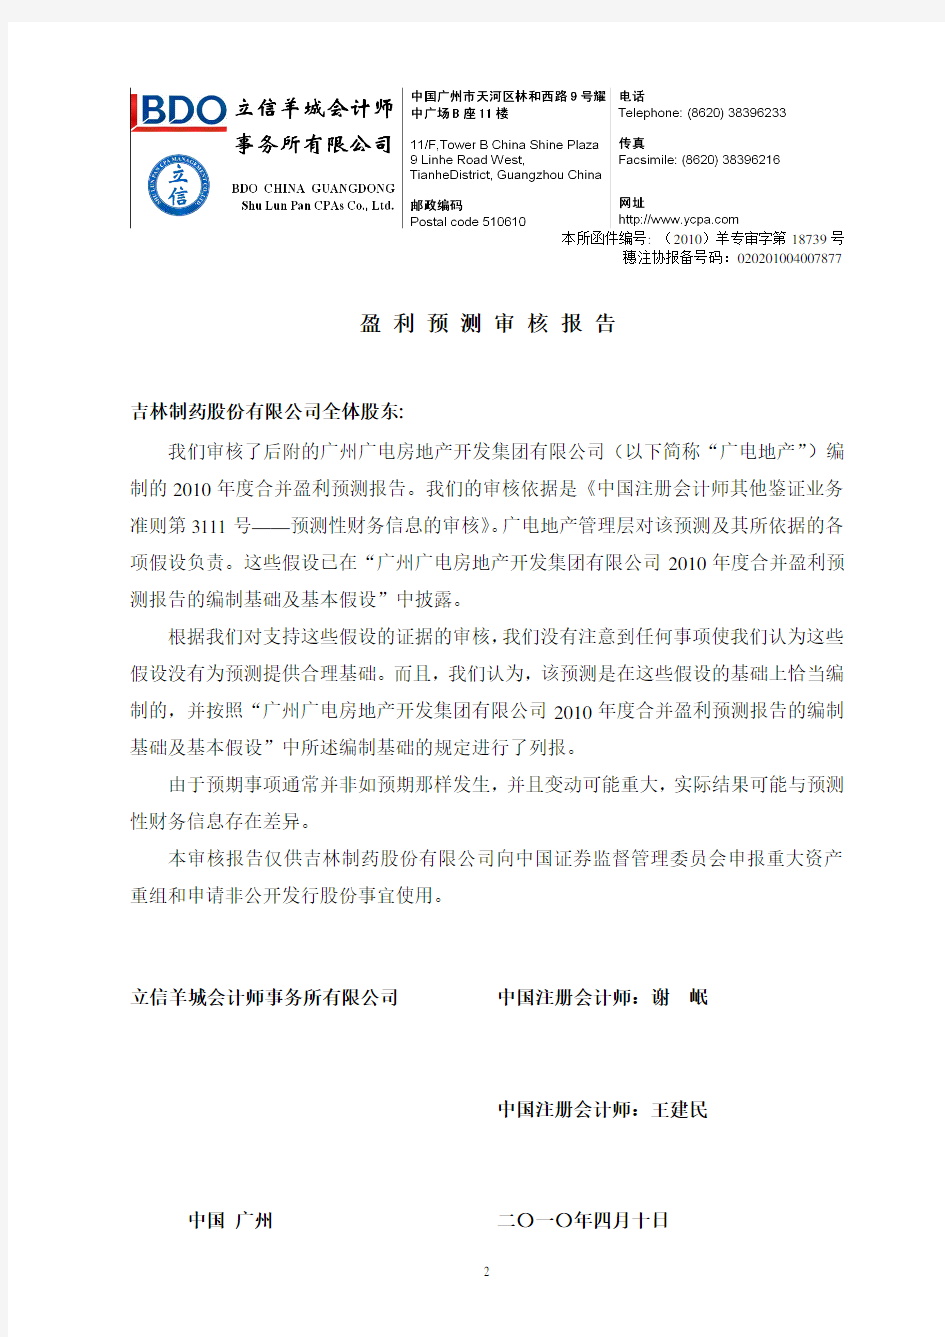 吉林制药：广州广电房地产开发集团有限公司2010年度合并盈利预测报告及合并盈利预测表 2010-04-14